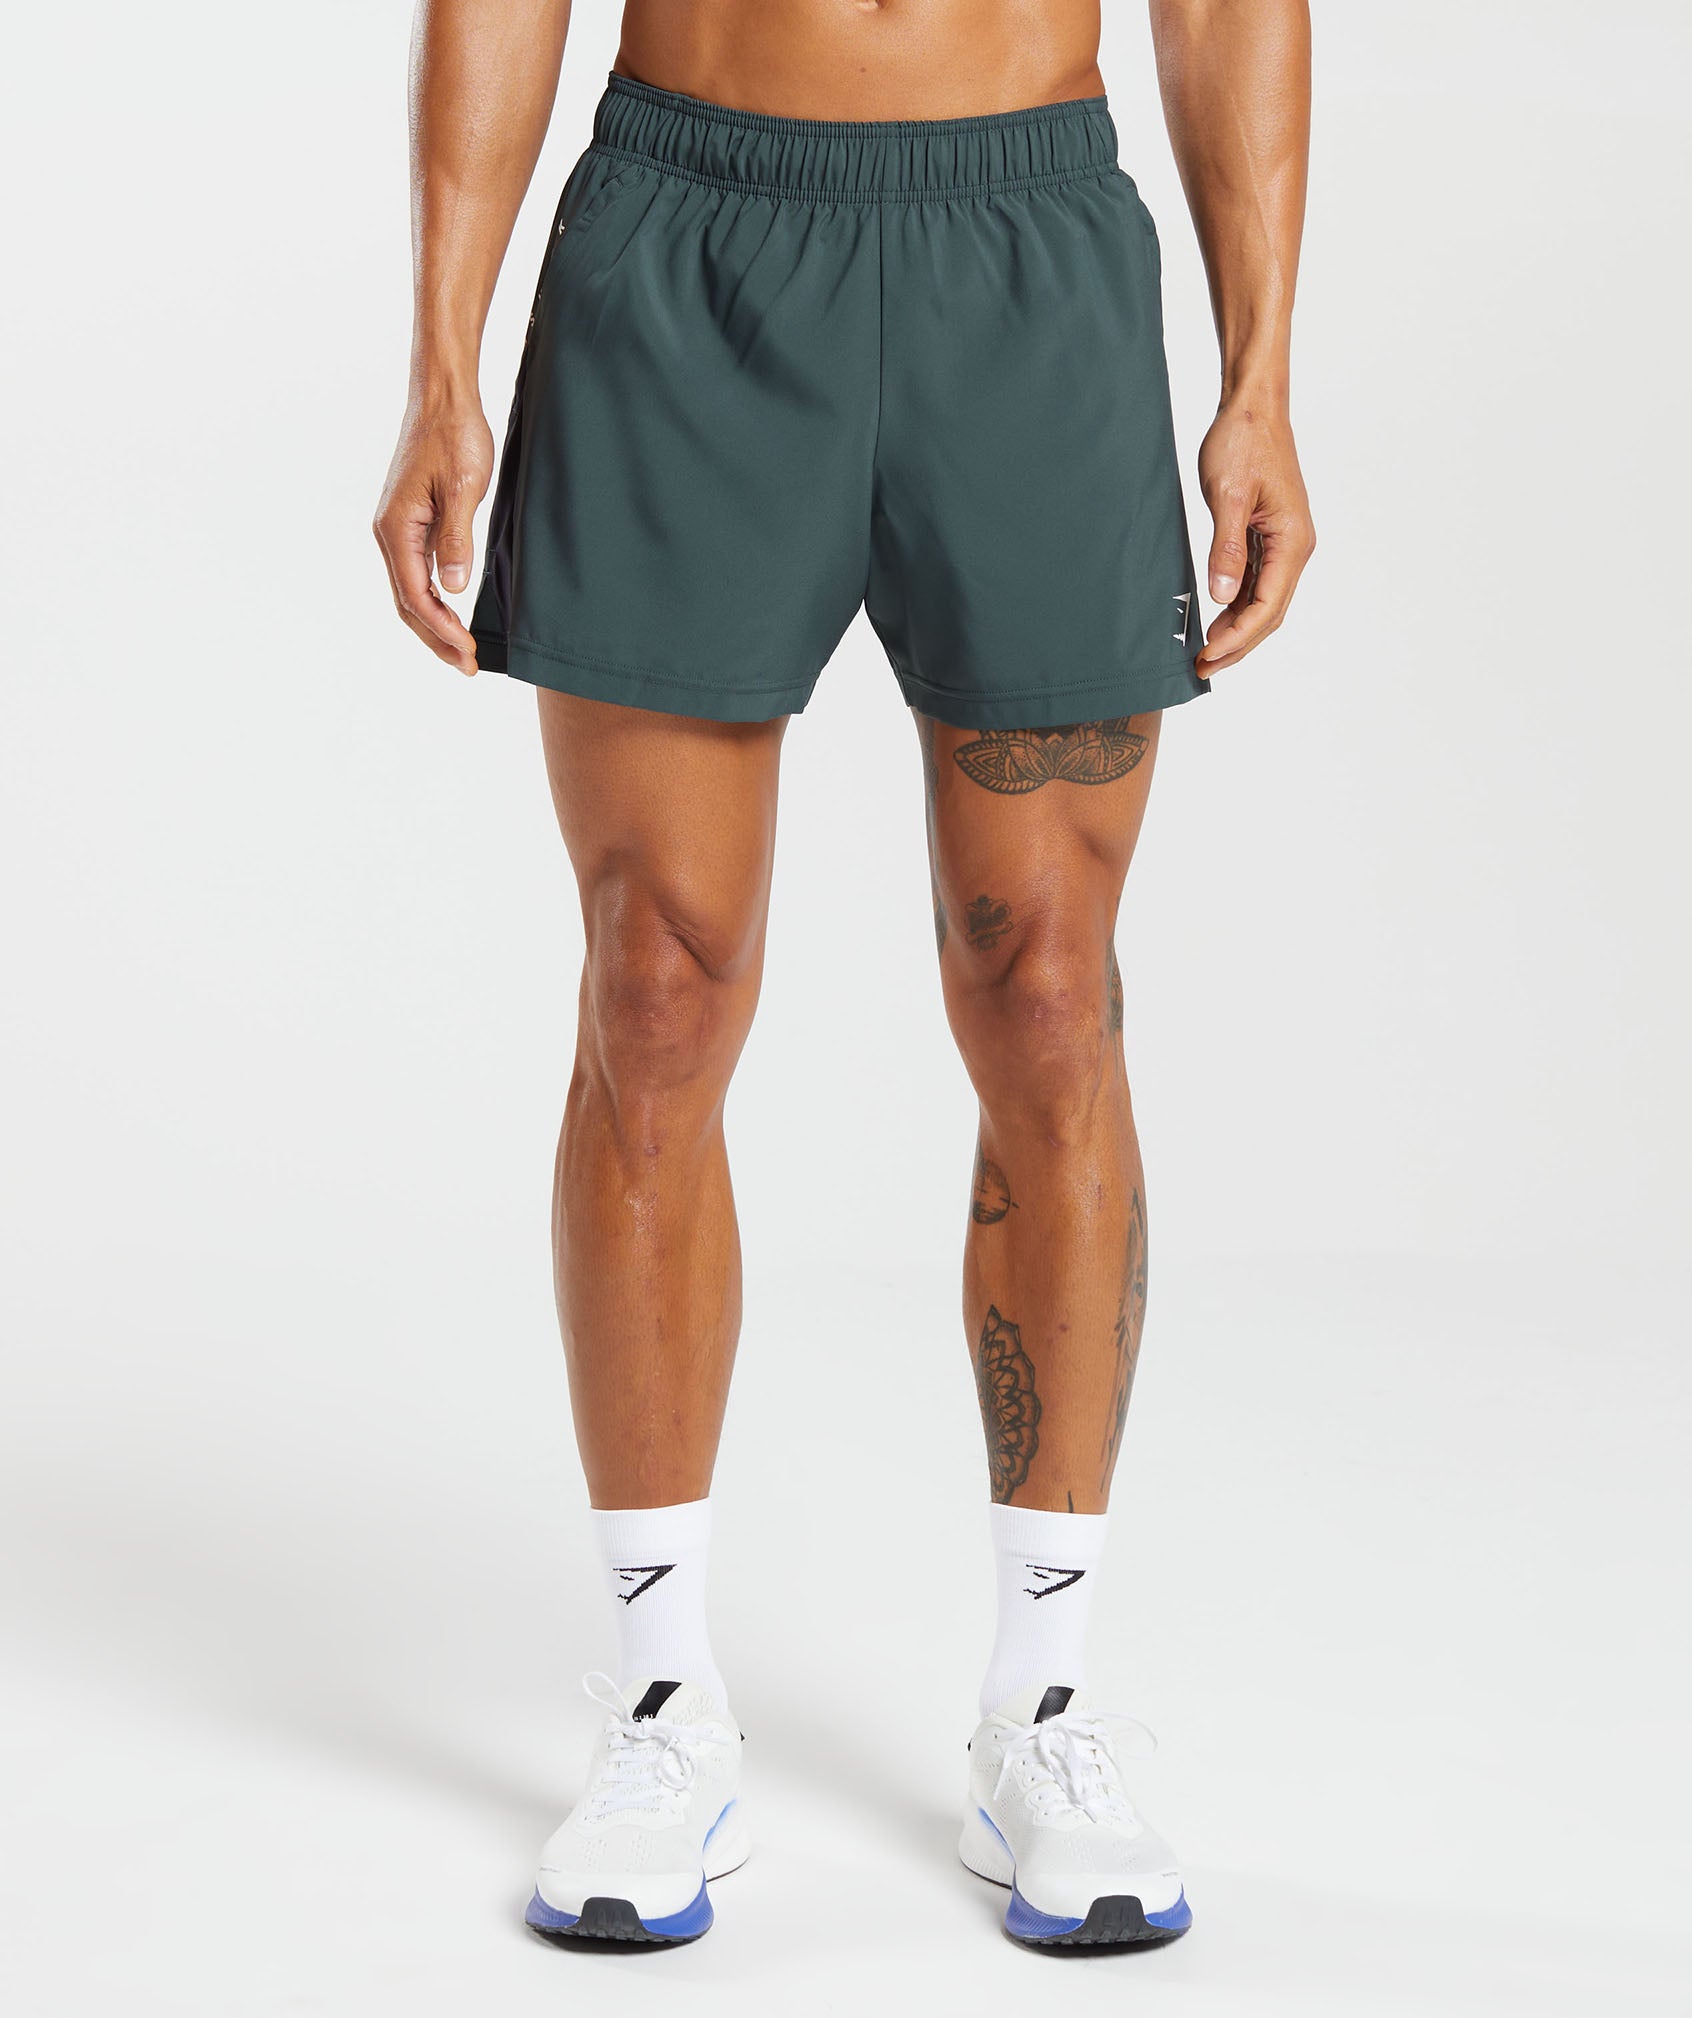 Gymshark Sport 5 Shorts - Fog Green/Black